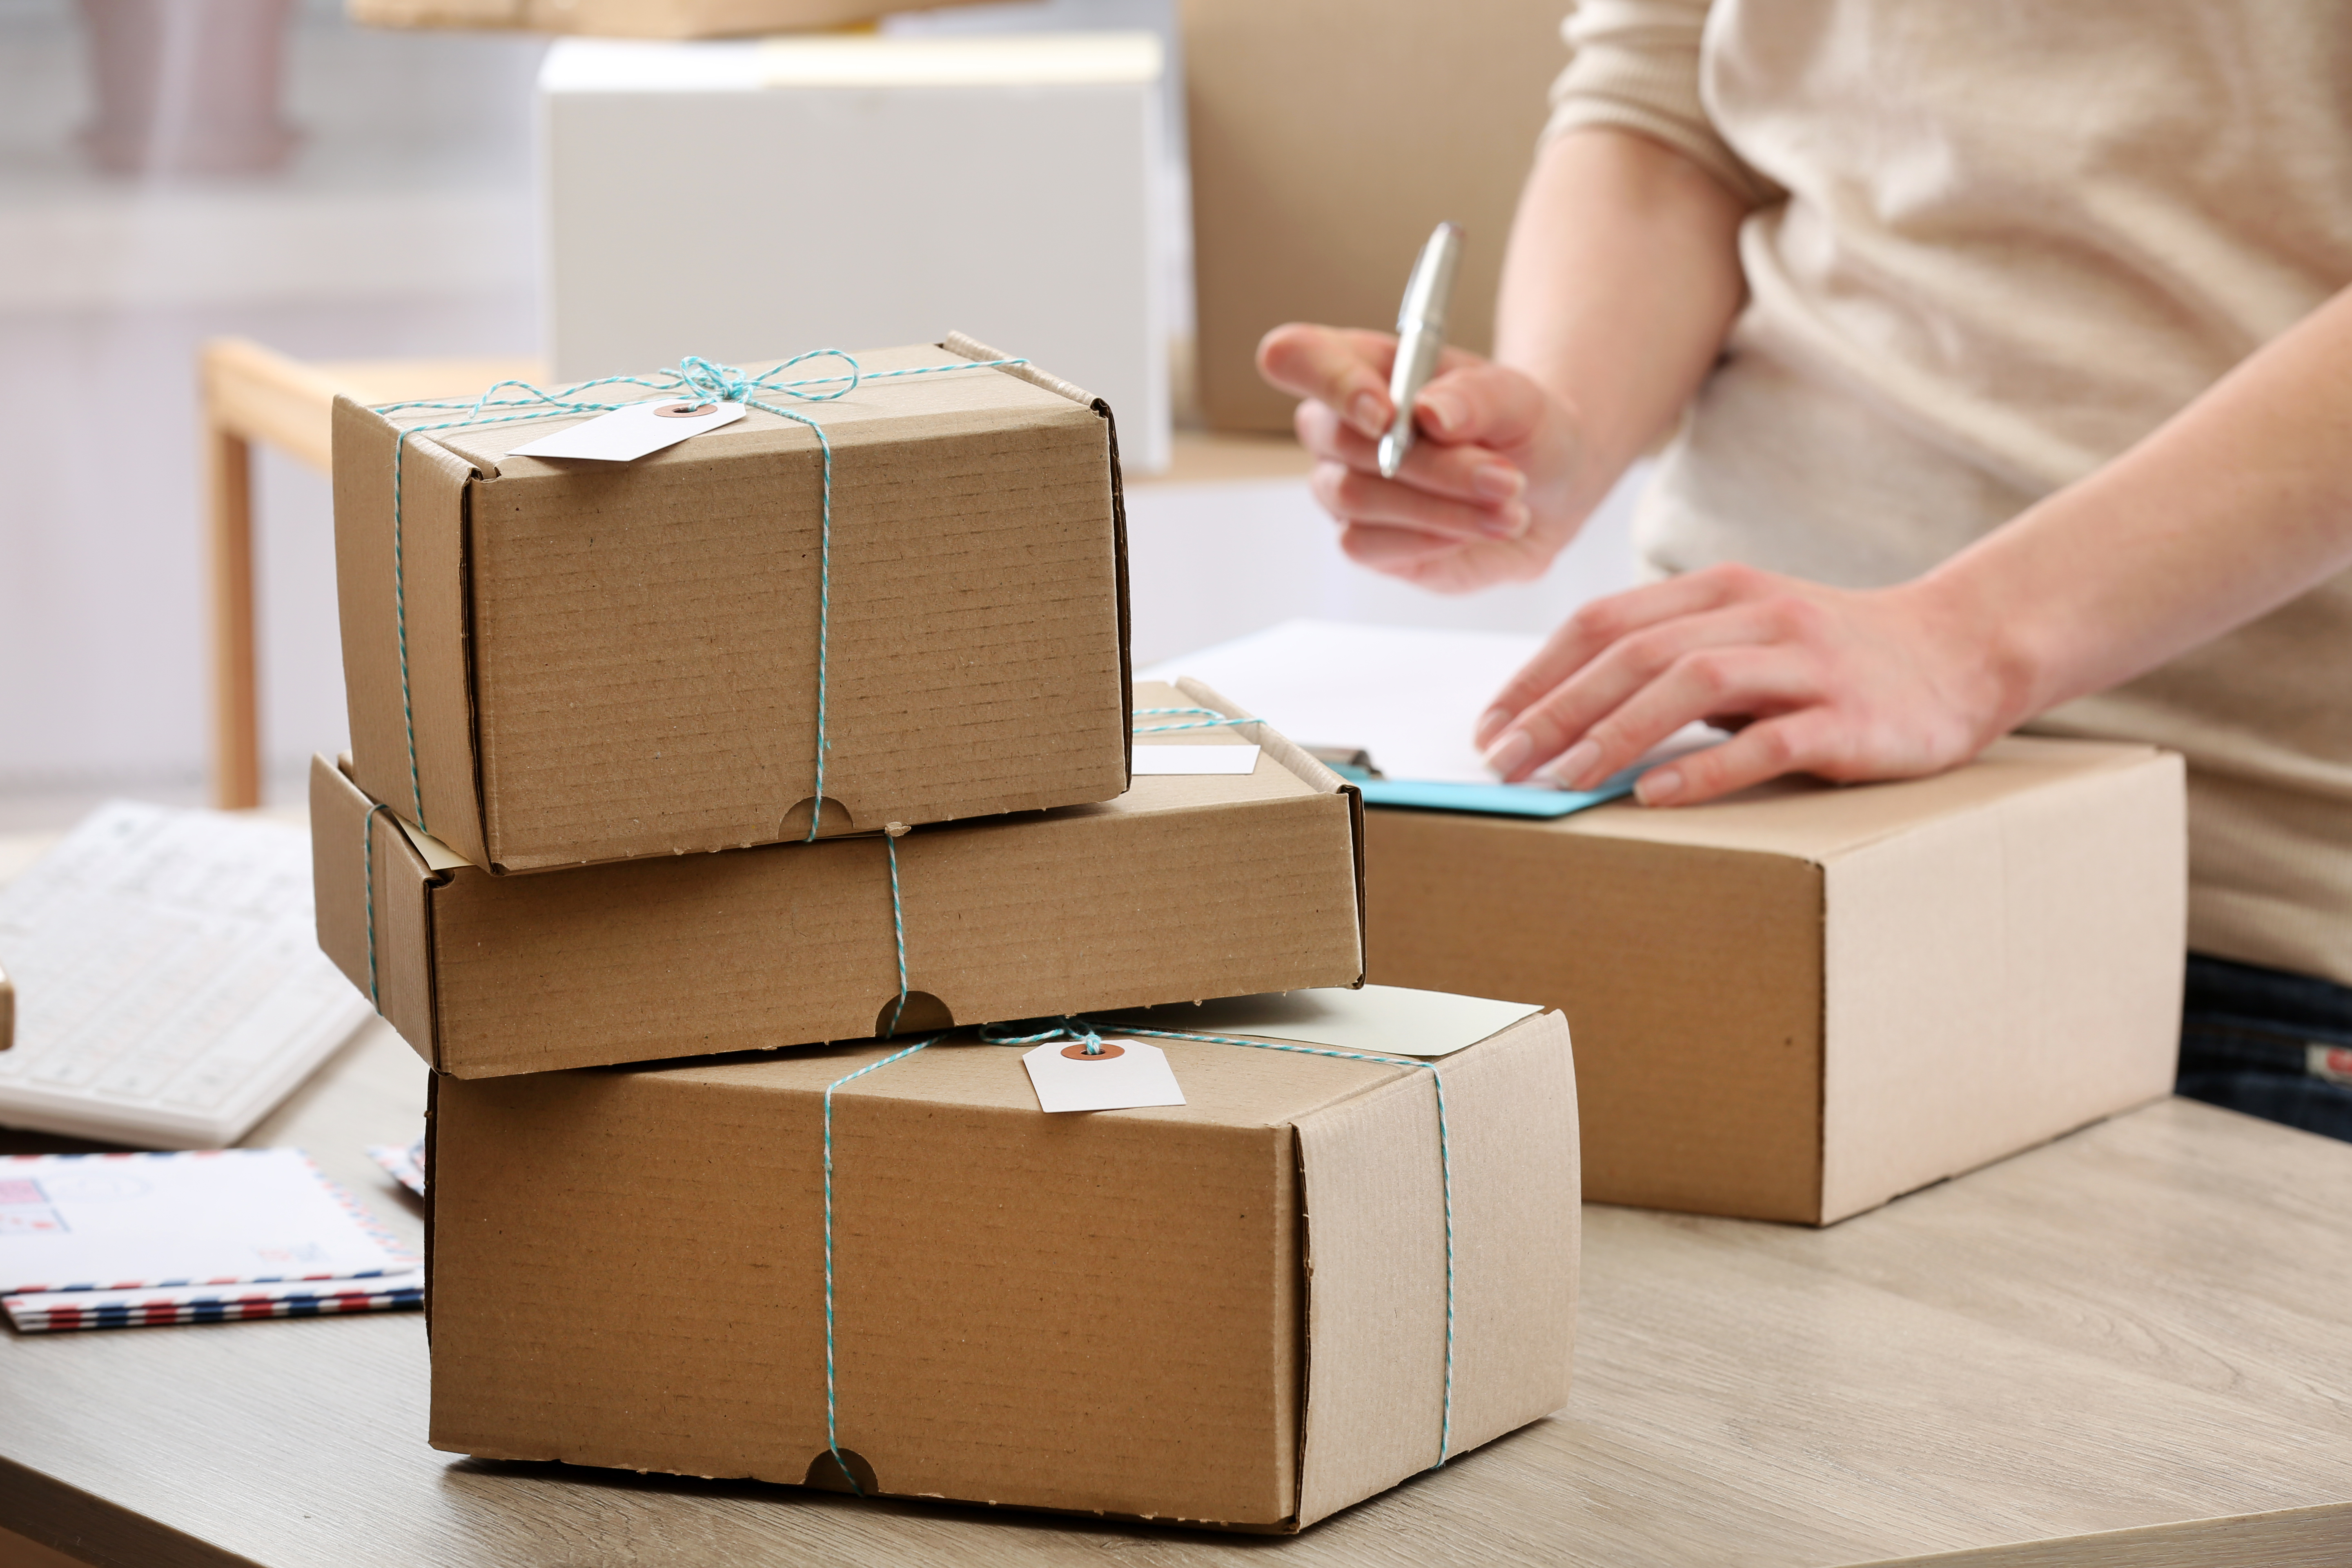 El servicio de mensajería y envío de paquetes es un modelo de negocio rentable si está bien organizado. (Foto Prensa Libre: Shutterstock)